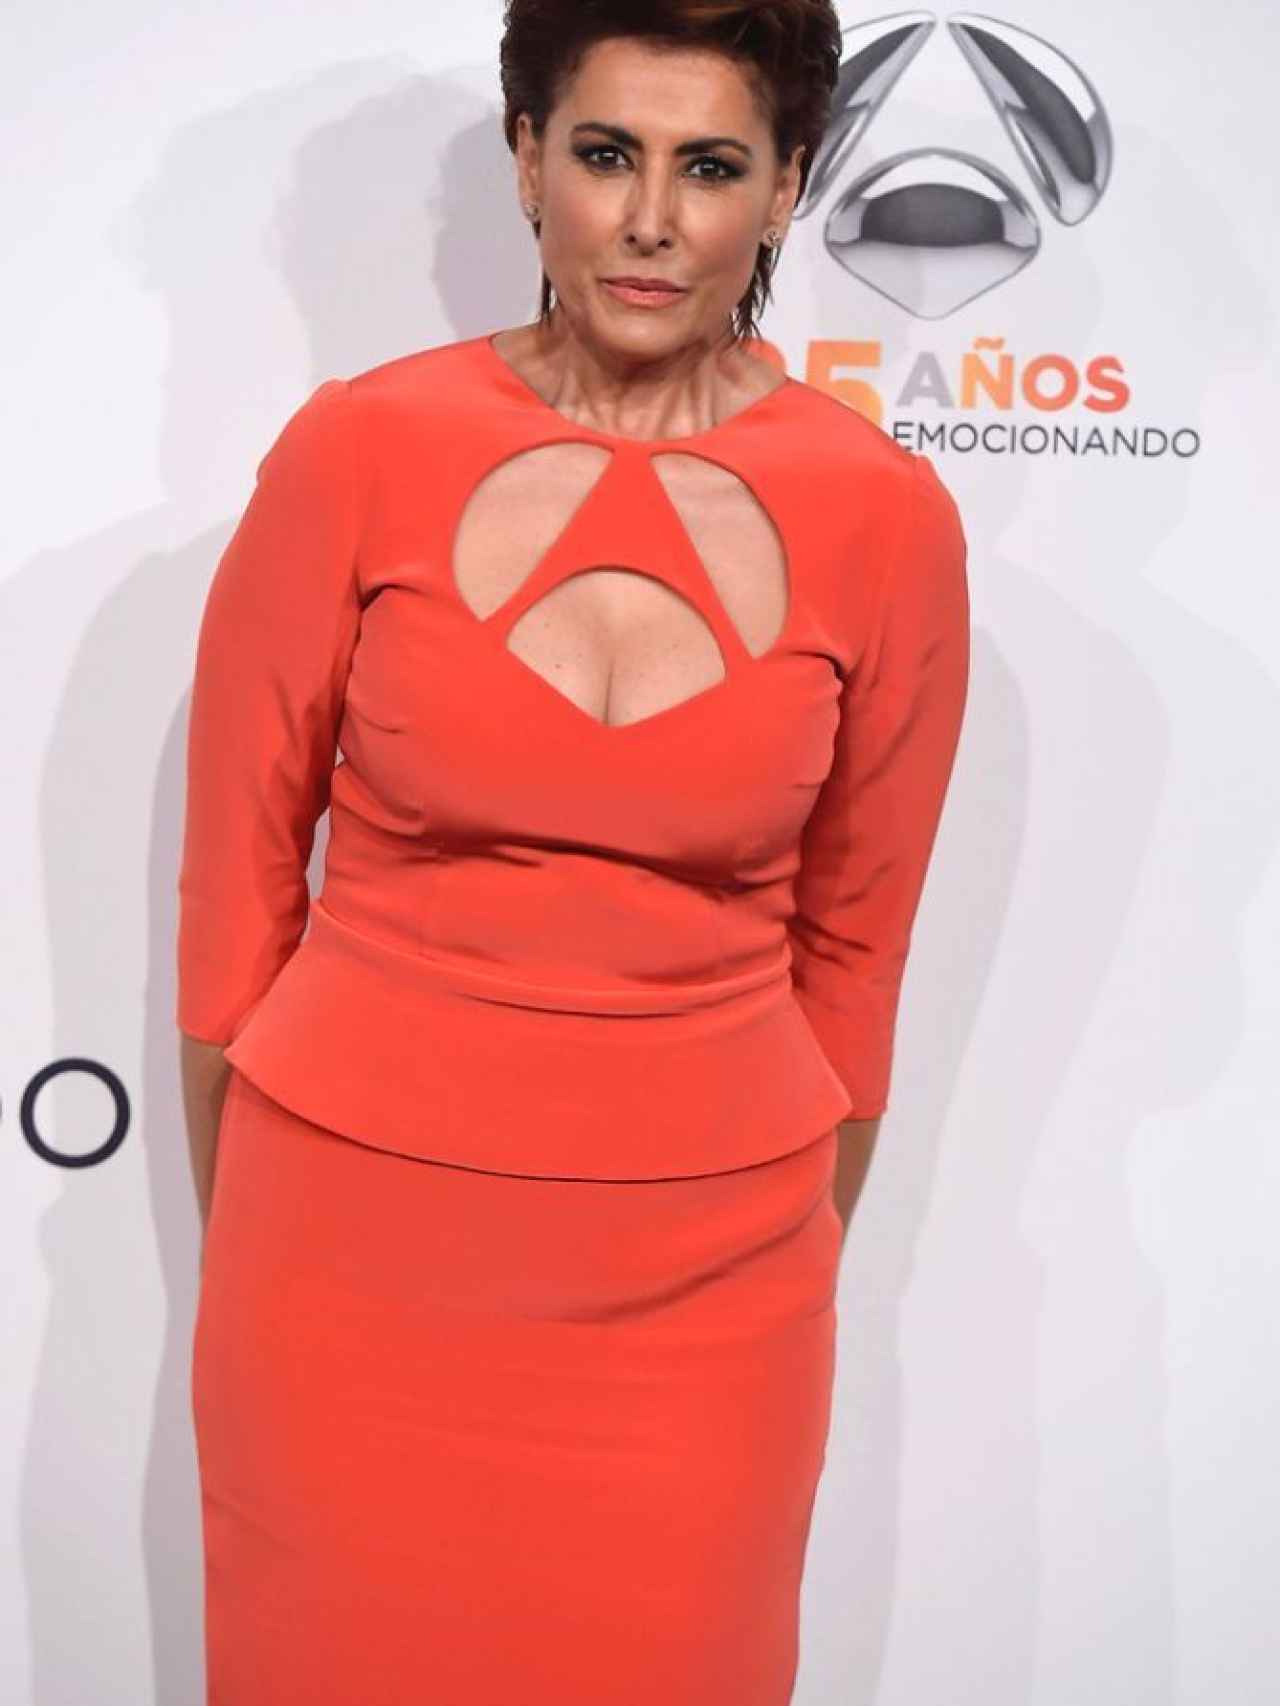 La presentadora Irma Soriano con logo de Antena 3 troquelado en el vestido.